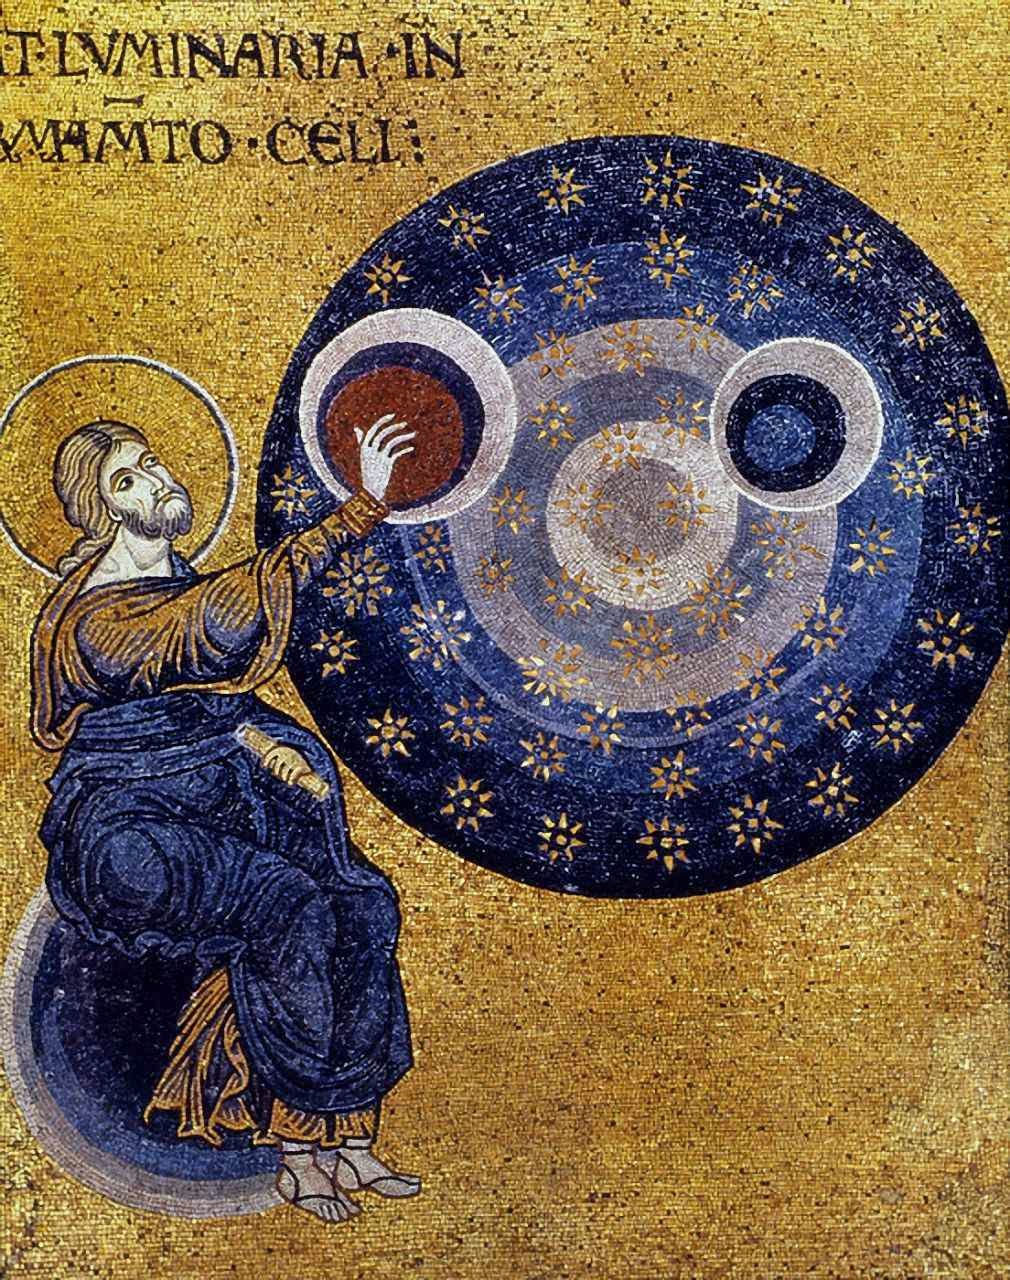 Fenômenos como o identificado pela NASA postulam a existência de um Deus que criou o mundo com infinita sabedoria e o governa com insondável poder. Mosaico siciliano do século XII